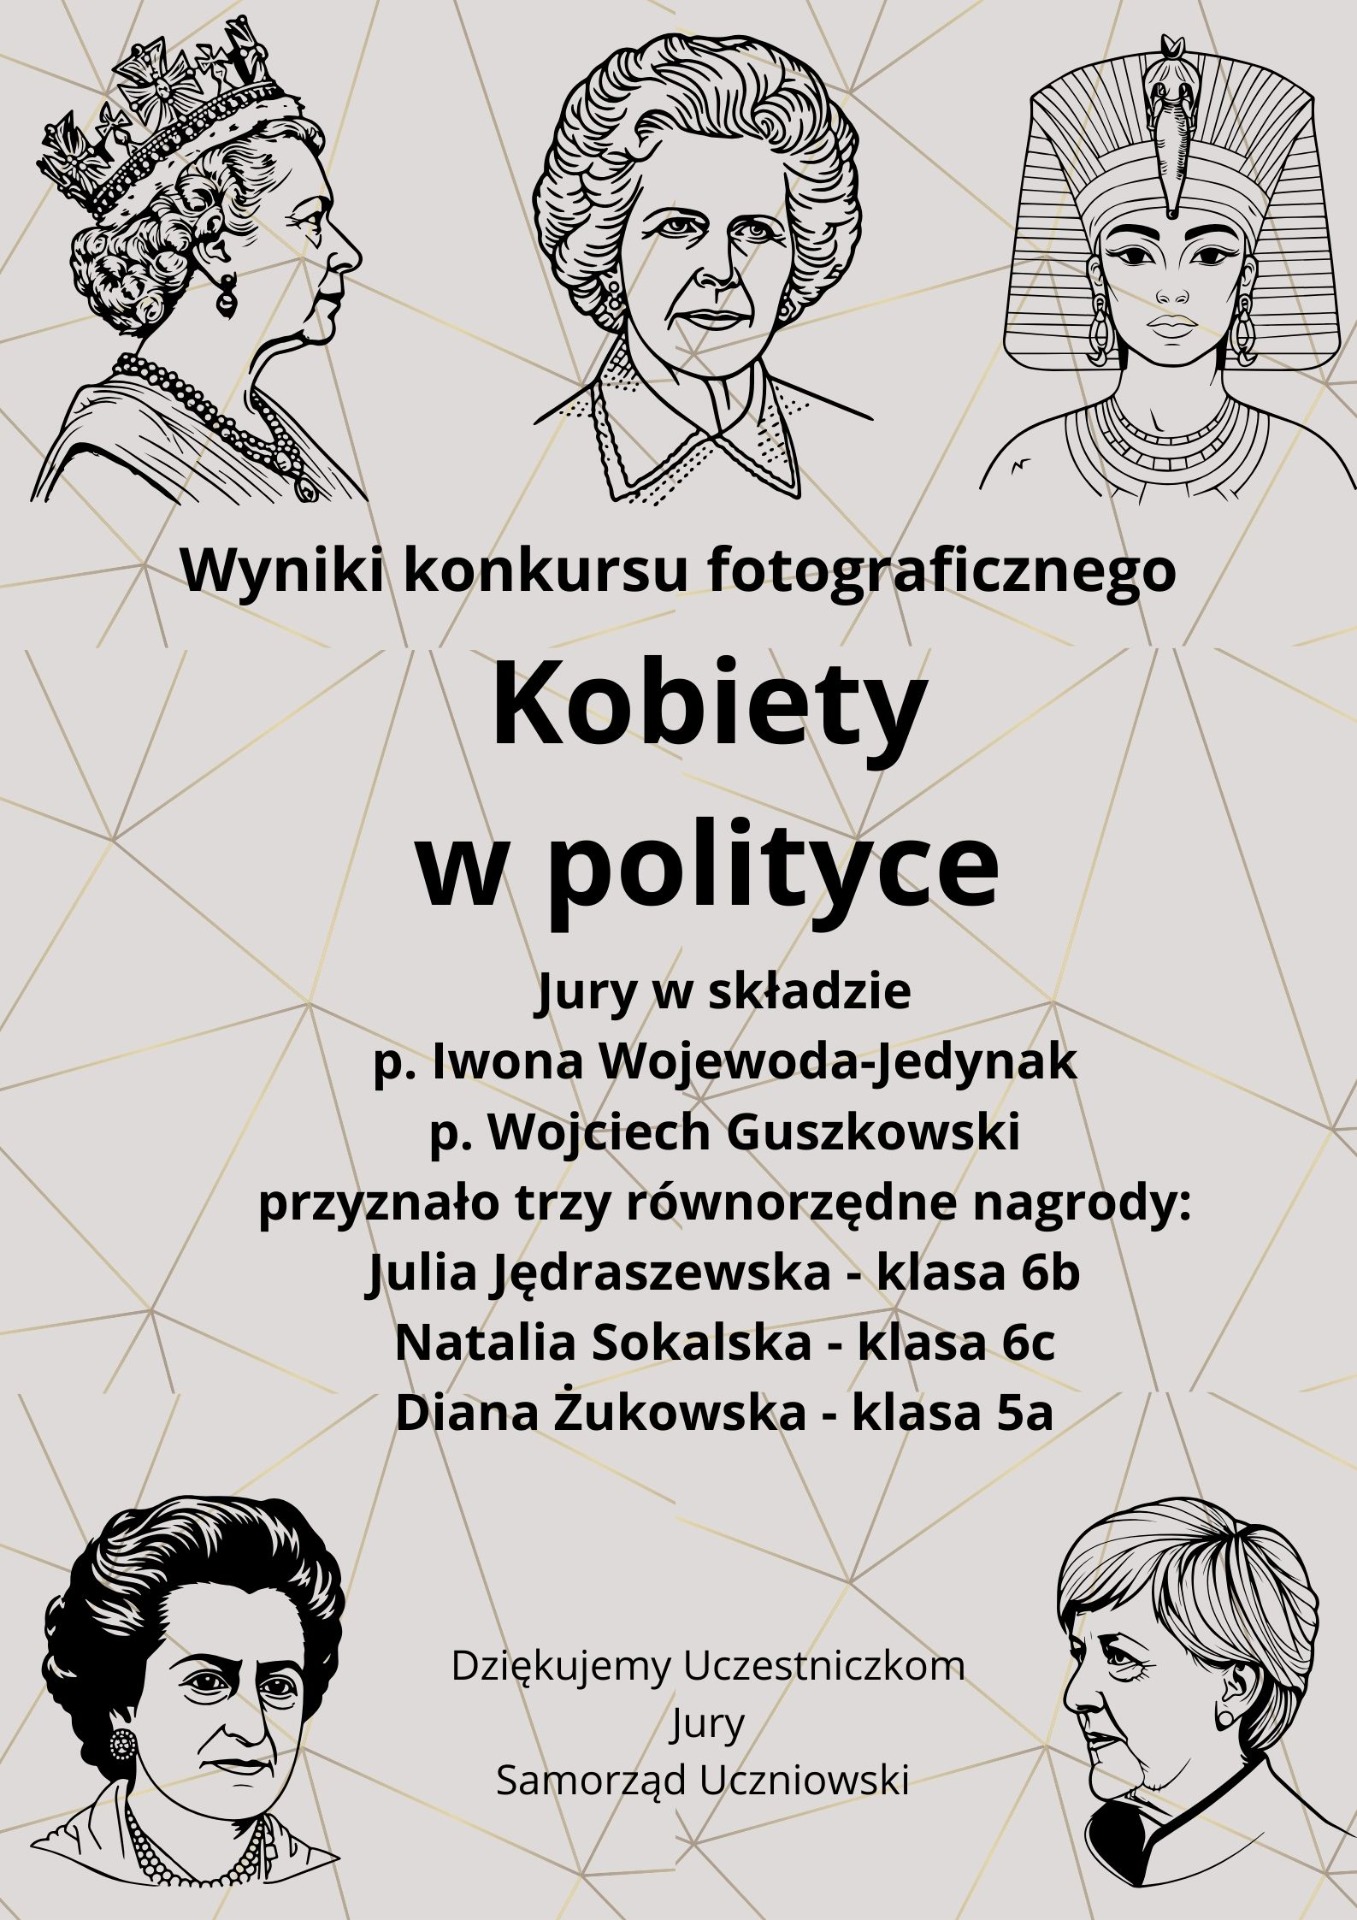 Kobiety w polityce - wyniki konkursu - Obrazek 1